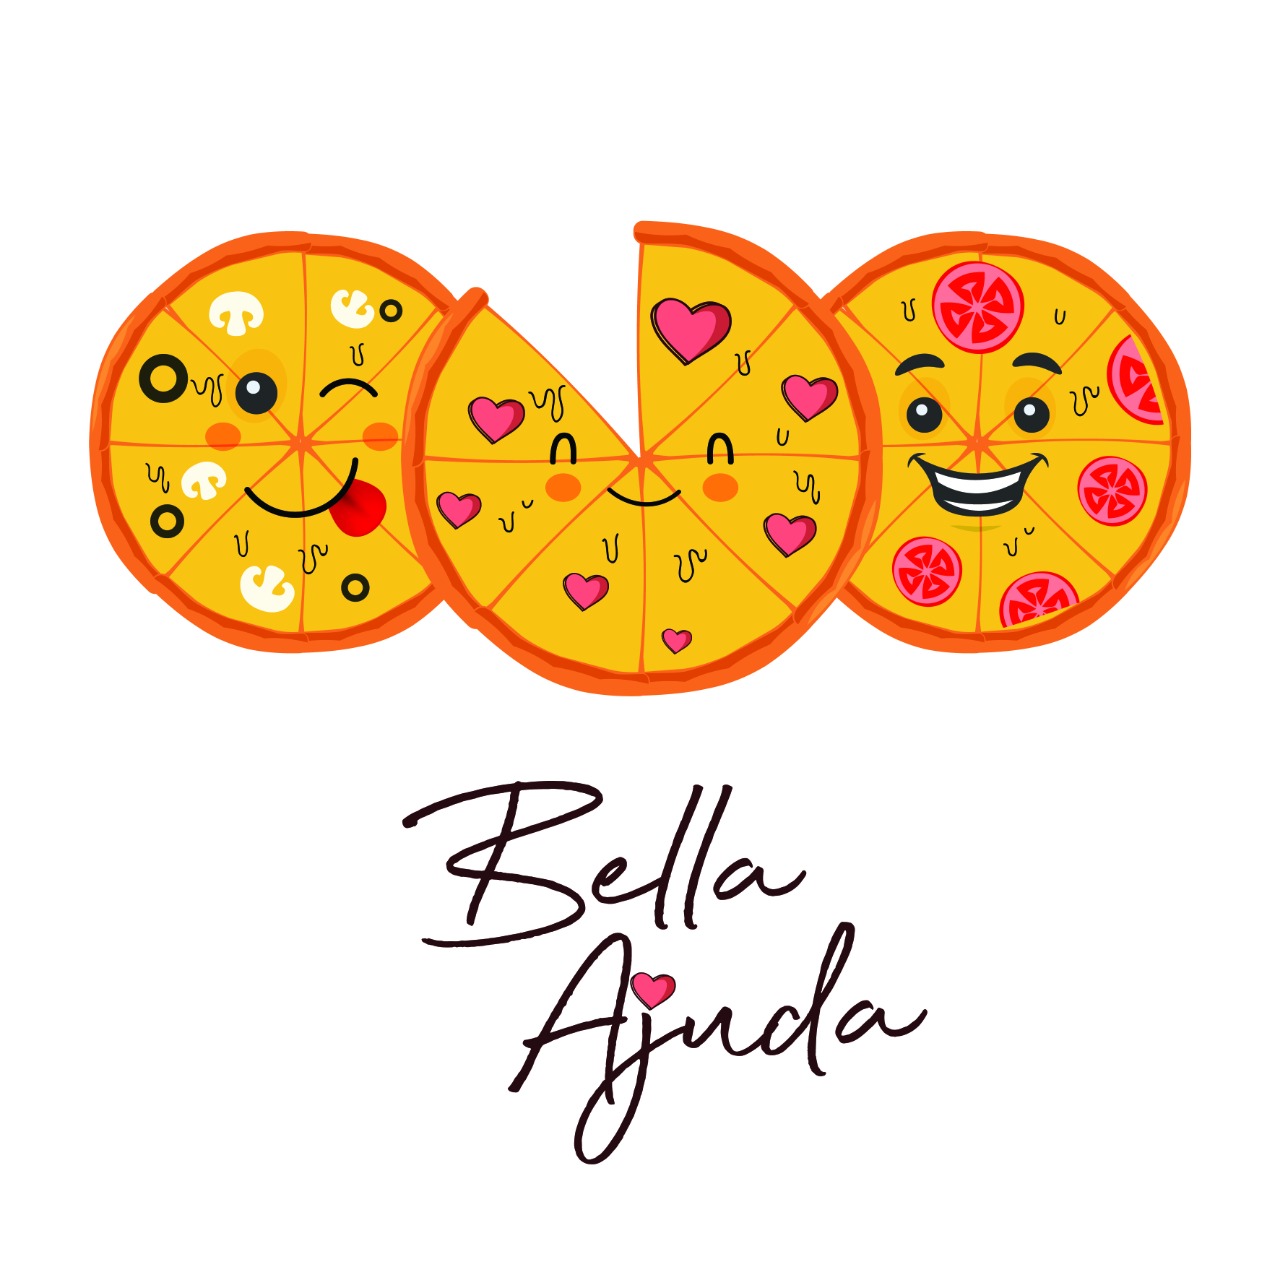 Bella Capri comemora nesta quarta o Dia da Pizza com lançamento de campanha beneficente